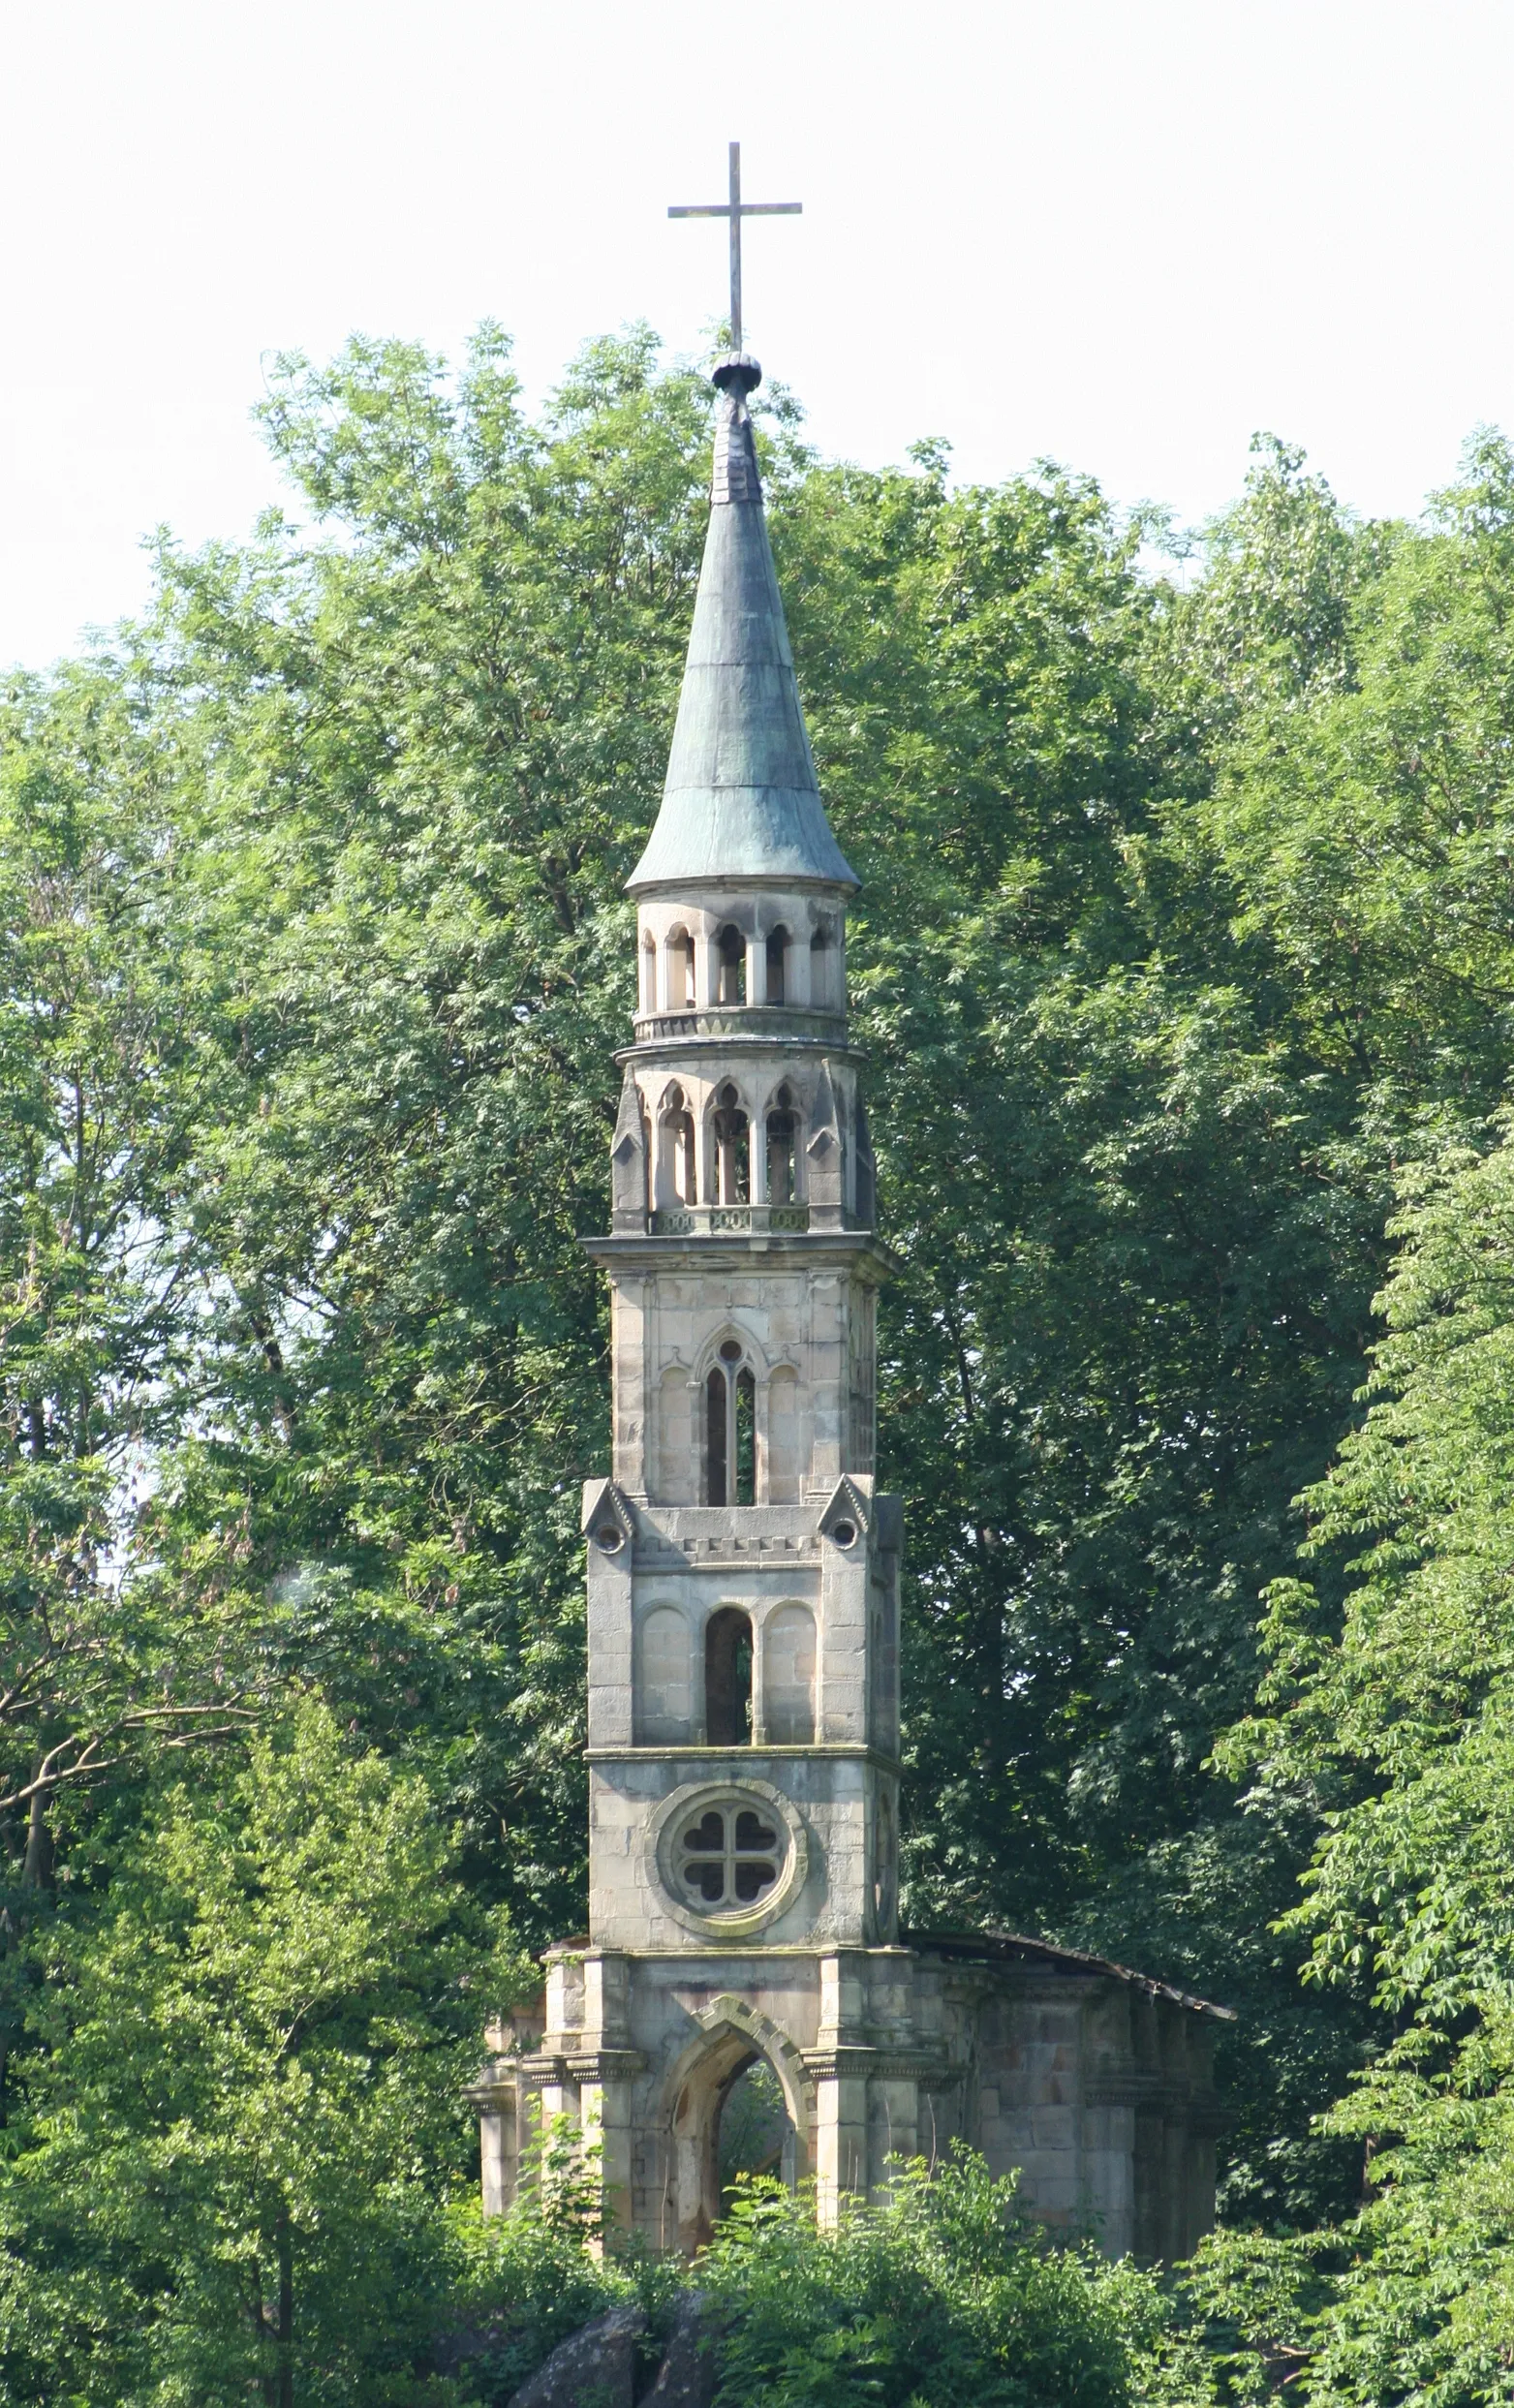 Photo showing: Kirchenruine auf Insel im Schlosspark des Schlosses Monrepos in Ludwigsburg. Denkmalliste für Ludwigsburg nicht verfügbar.